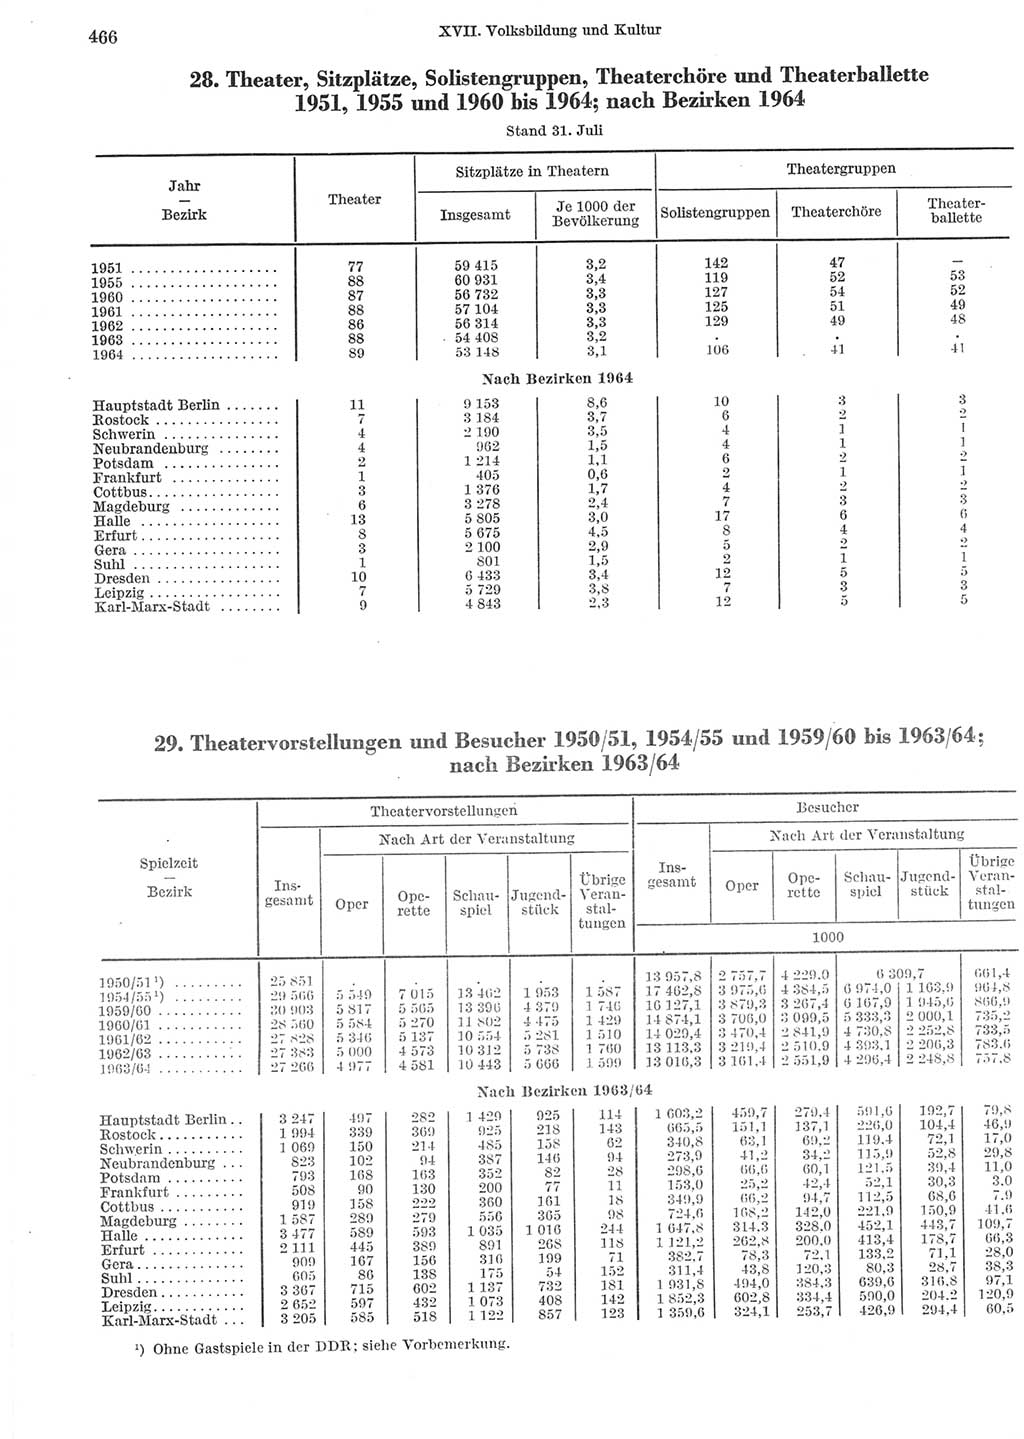 Statistisches Jahrbuch der Deutschen Demokratischen Republik (DDR) 1965, Seite 466 (Stat. Jb. DDR 1965, S. 466)